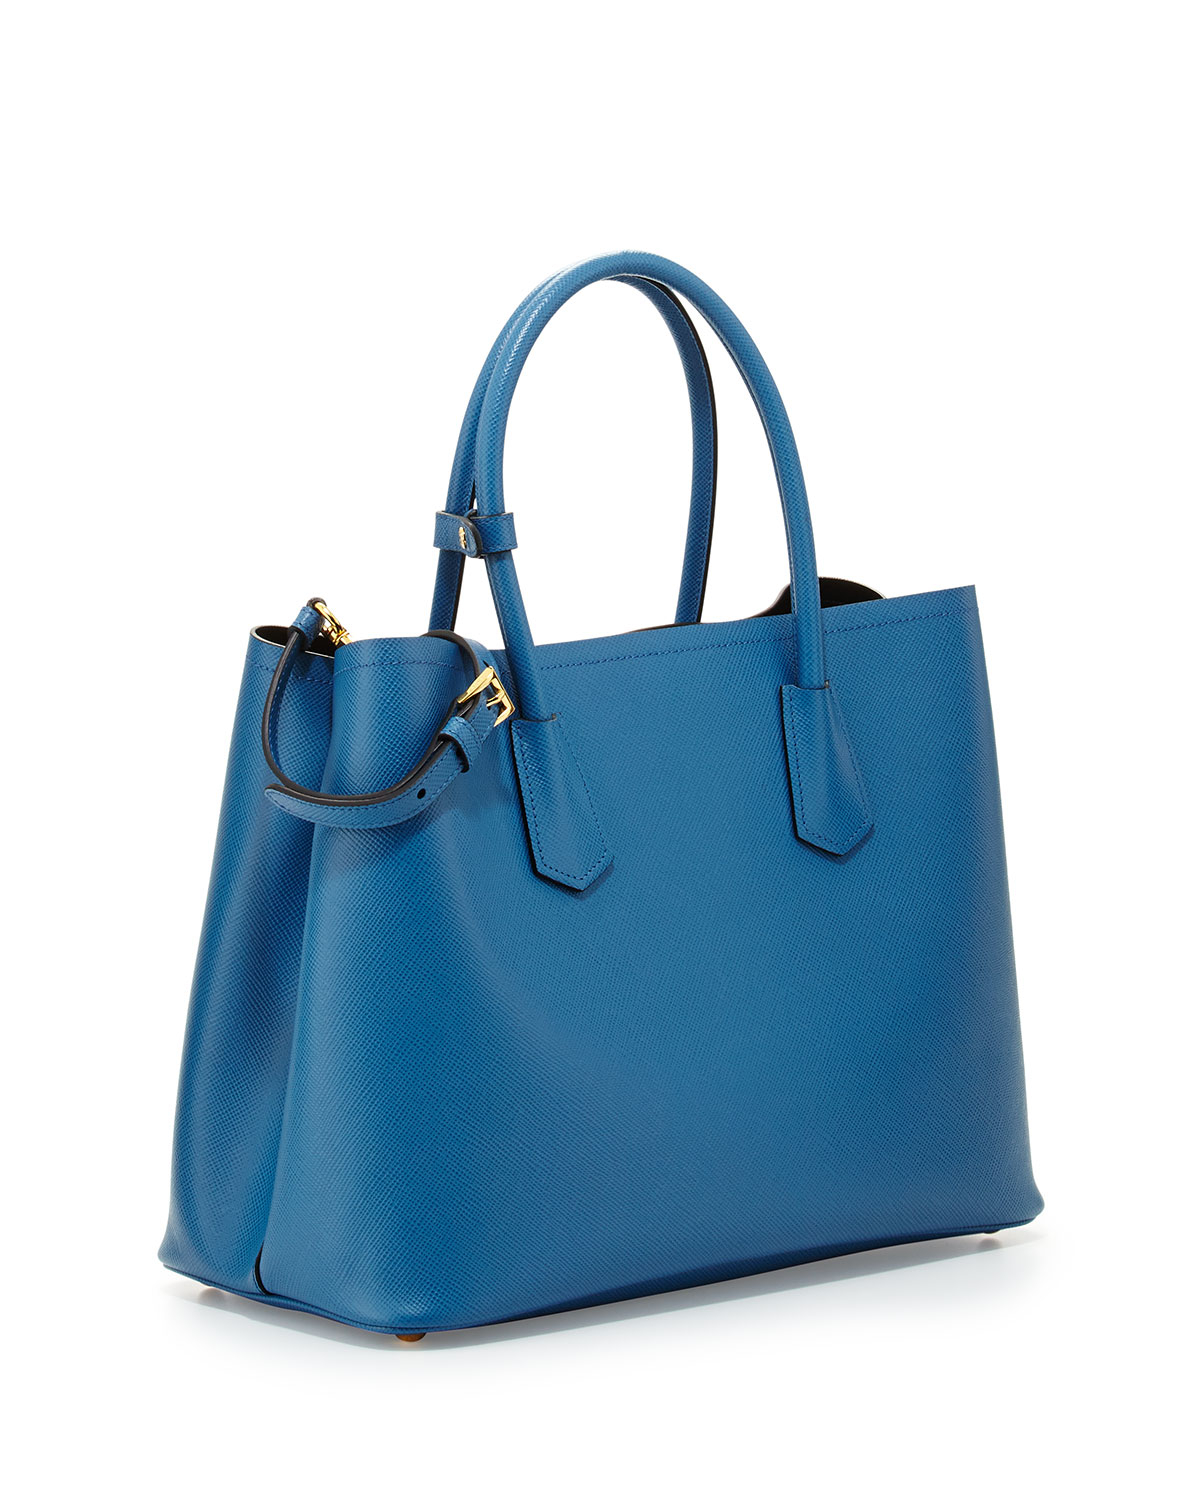 Prada Saffiano Cuir Medium Double Bag in Blue | Lyst